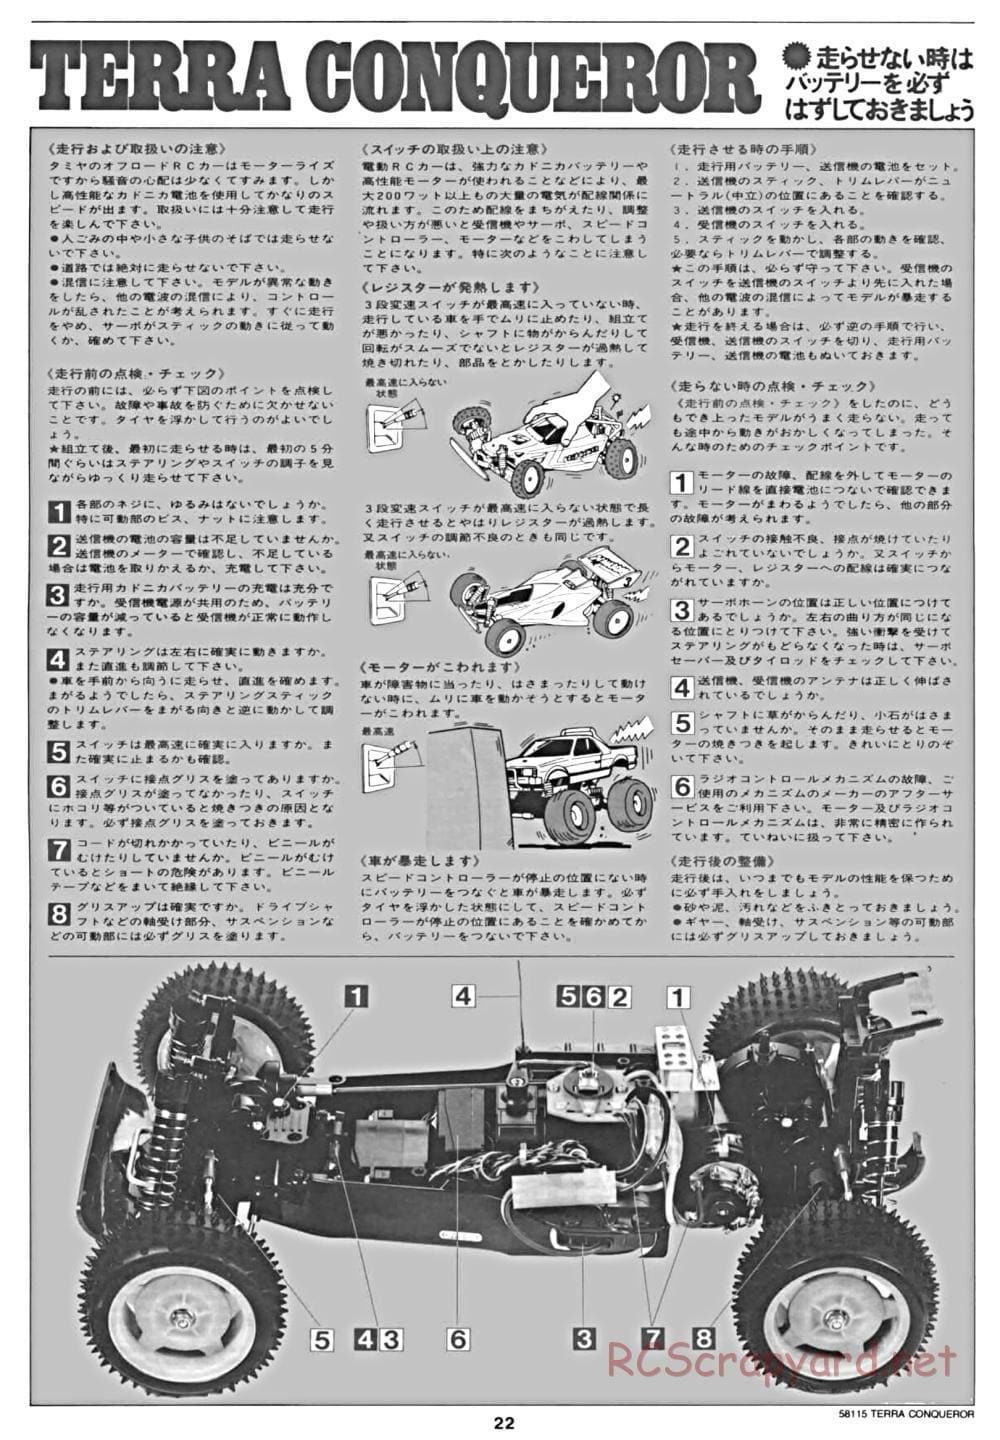 Tamiya - Terra Conqueror Chassis - Manual - Page 22